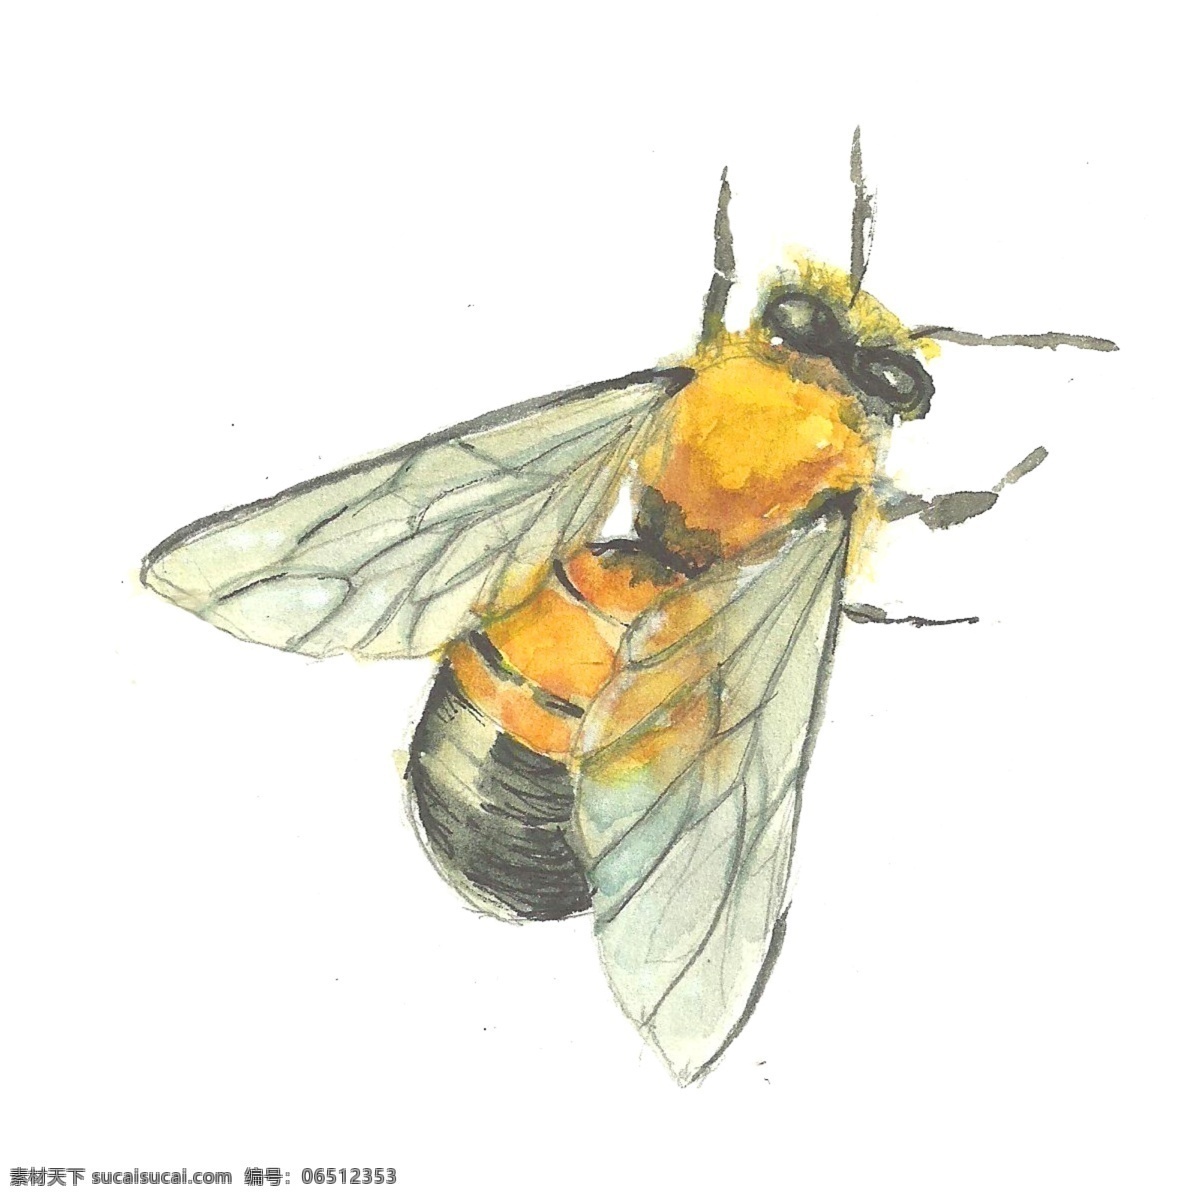 手绘蜜蜂 蜂巢 两只蜜蜂 采蜜 蜂王 六边形 蜂窝 蜜蜂 手绘 昆虫 生物世界 装饰画 卡通 壁纸 壁纸设计 移门图案 清新 蜜蜂墙纸